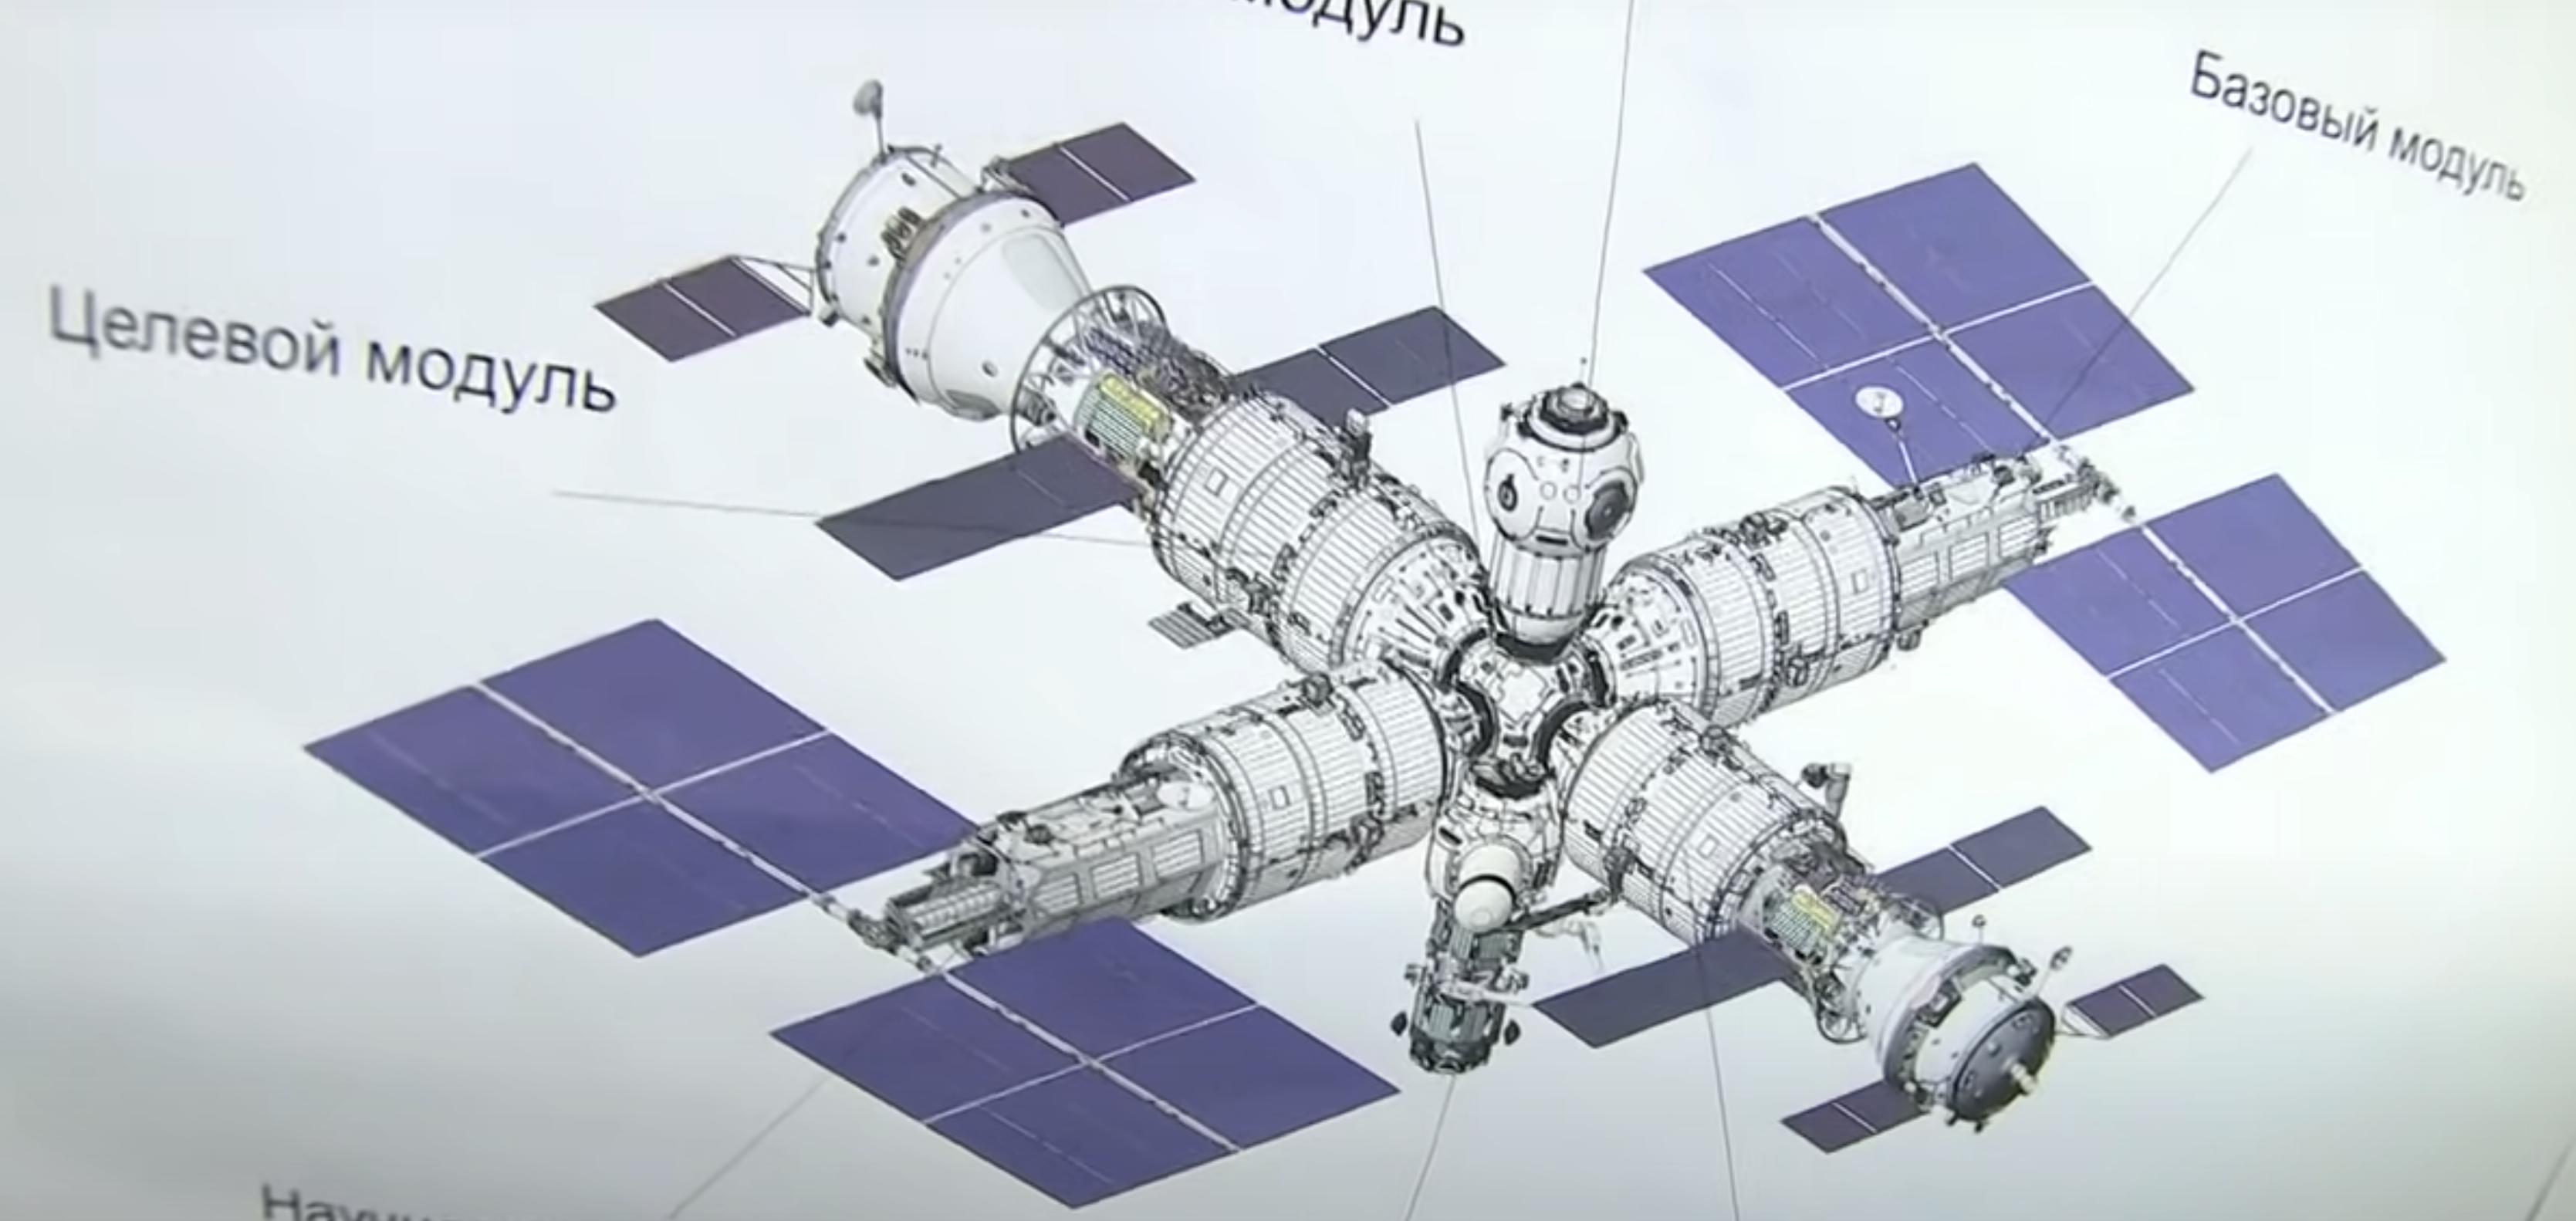 Rusia ya tiene su propia estación espacial, aunque por el momento es una maqueta